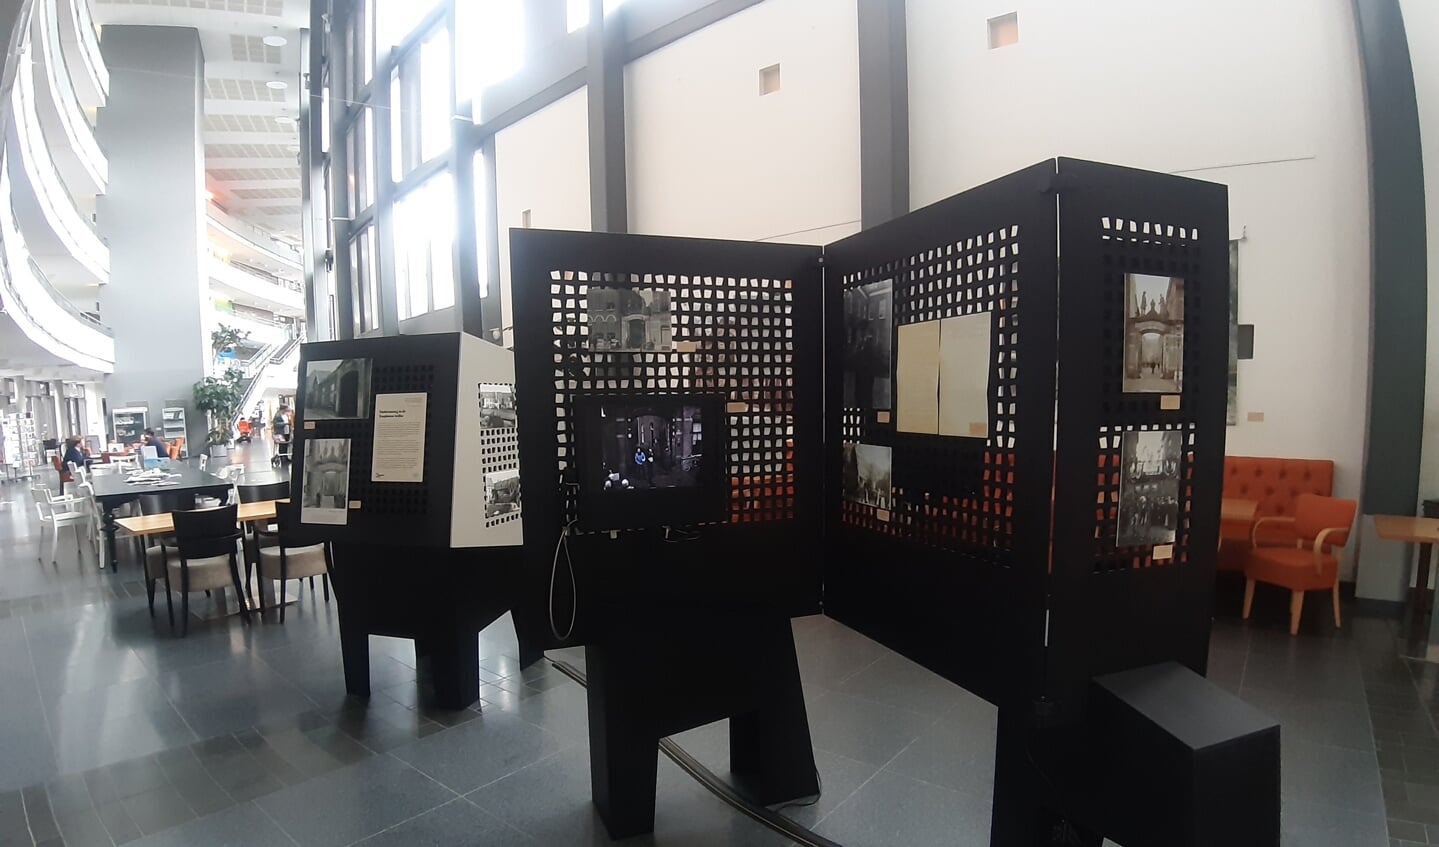 Woonzorgcentrum De Lunette aan de Coehoornsingel heeft tot en met 29 augustus de primeur van de mobiele expositie ‘Borro en de Vergeten Eeuw’. Foto: Rudi Hofman